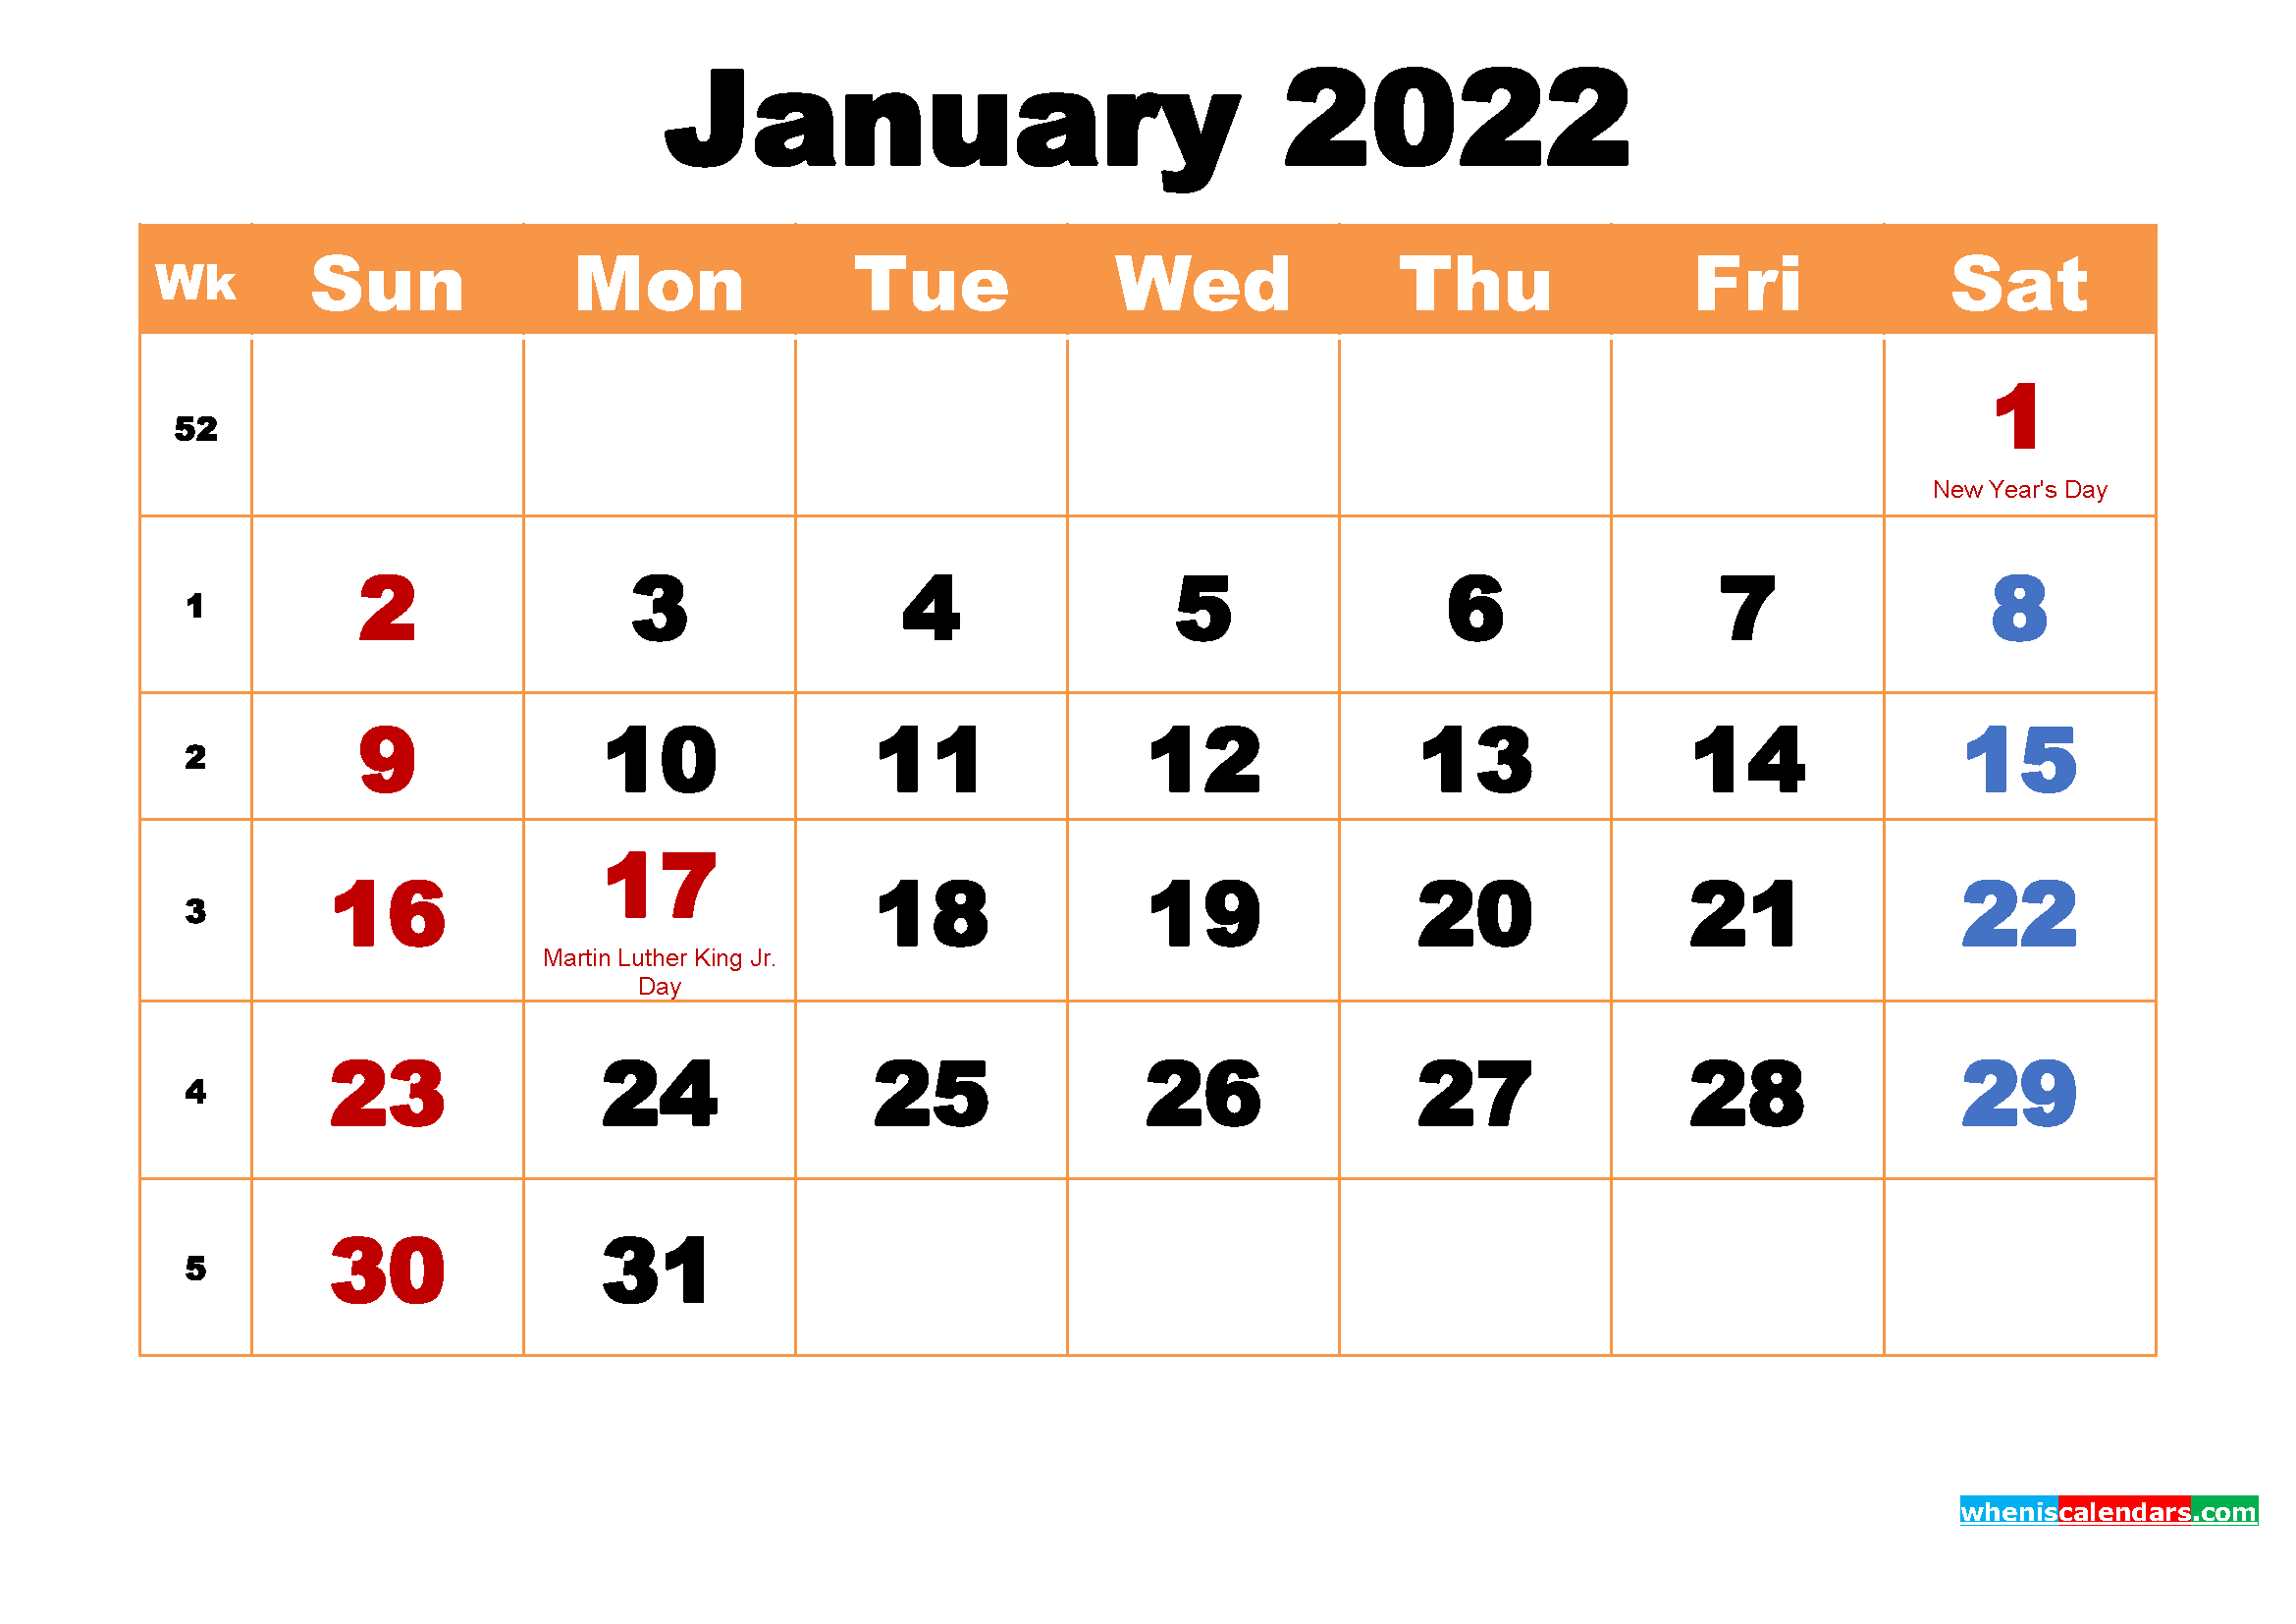 Calendar Wallpaper On